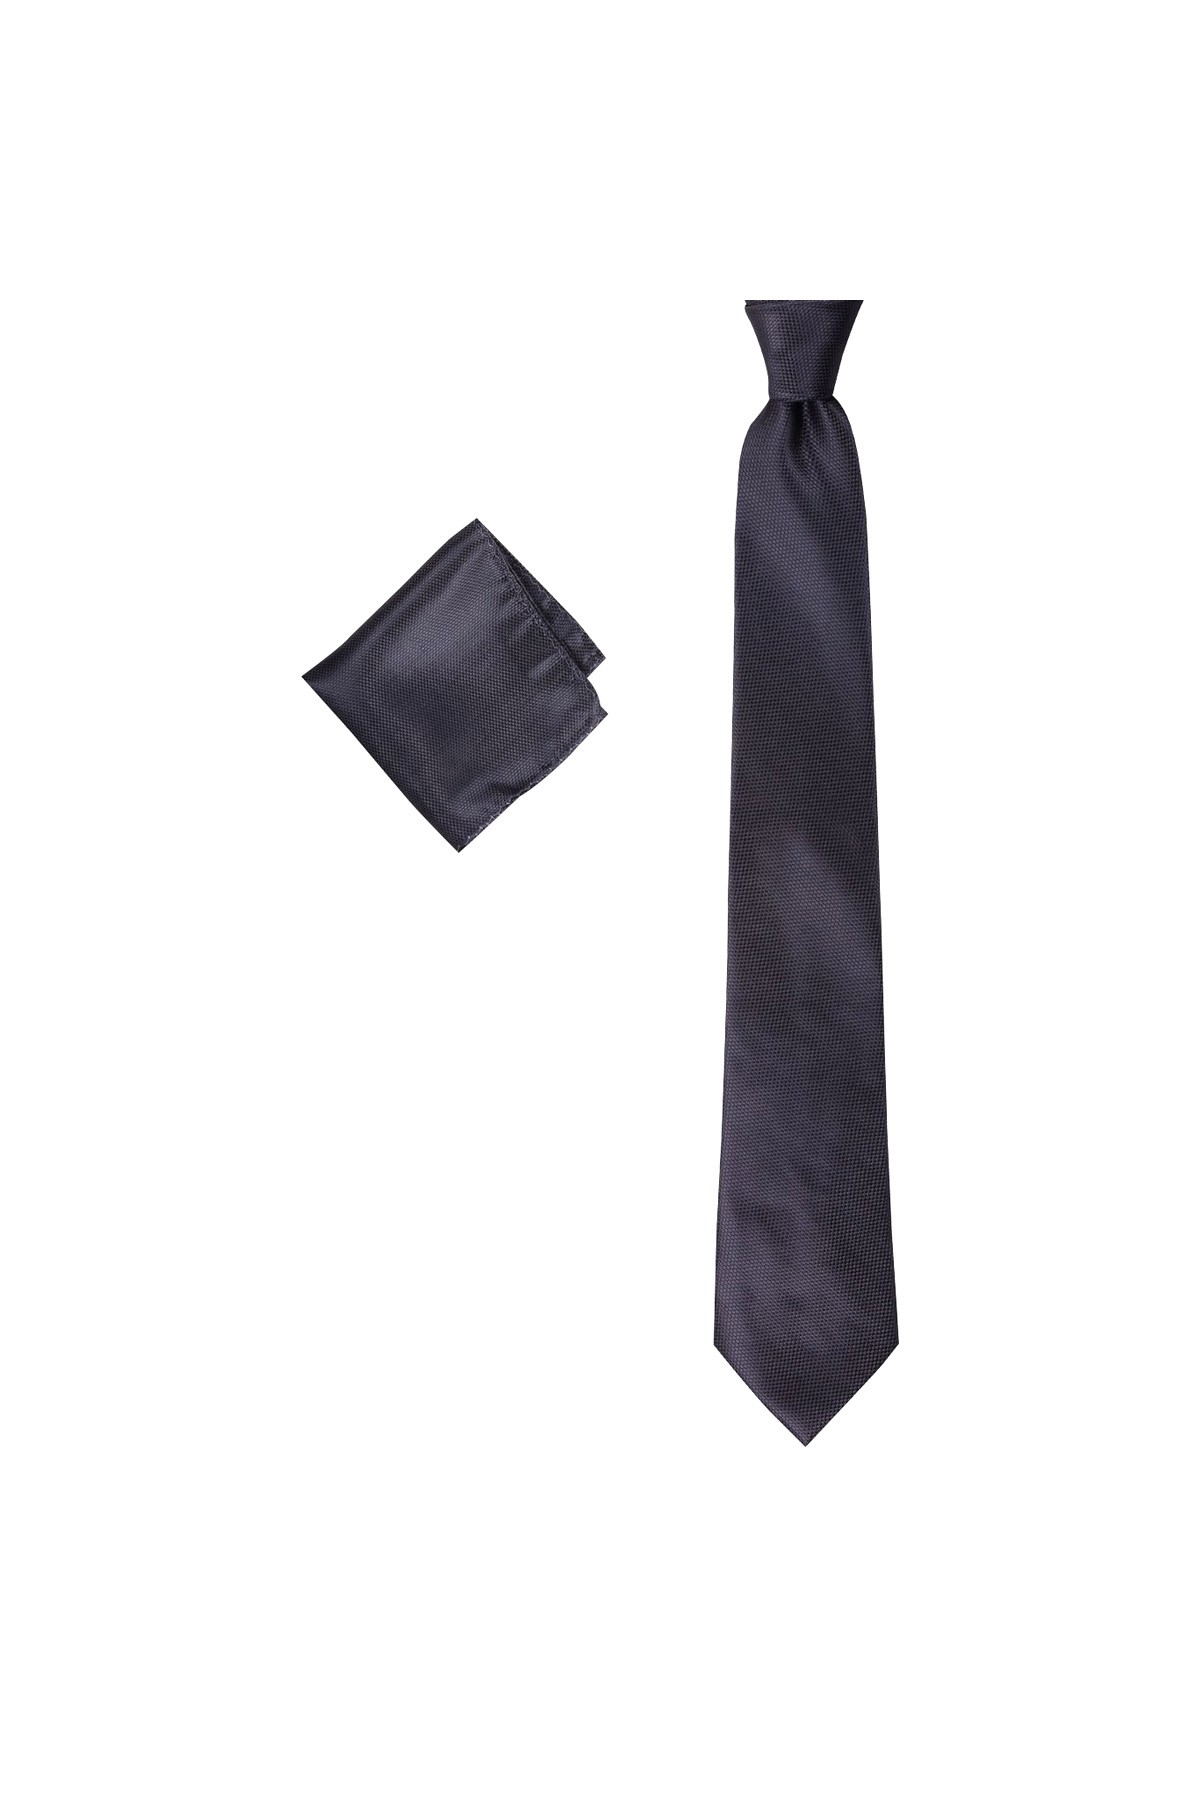 Klasik 8 cm genişliğinde mendilli kravat - Koyu gri